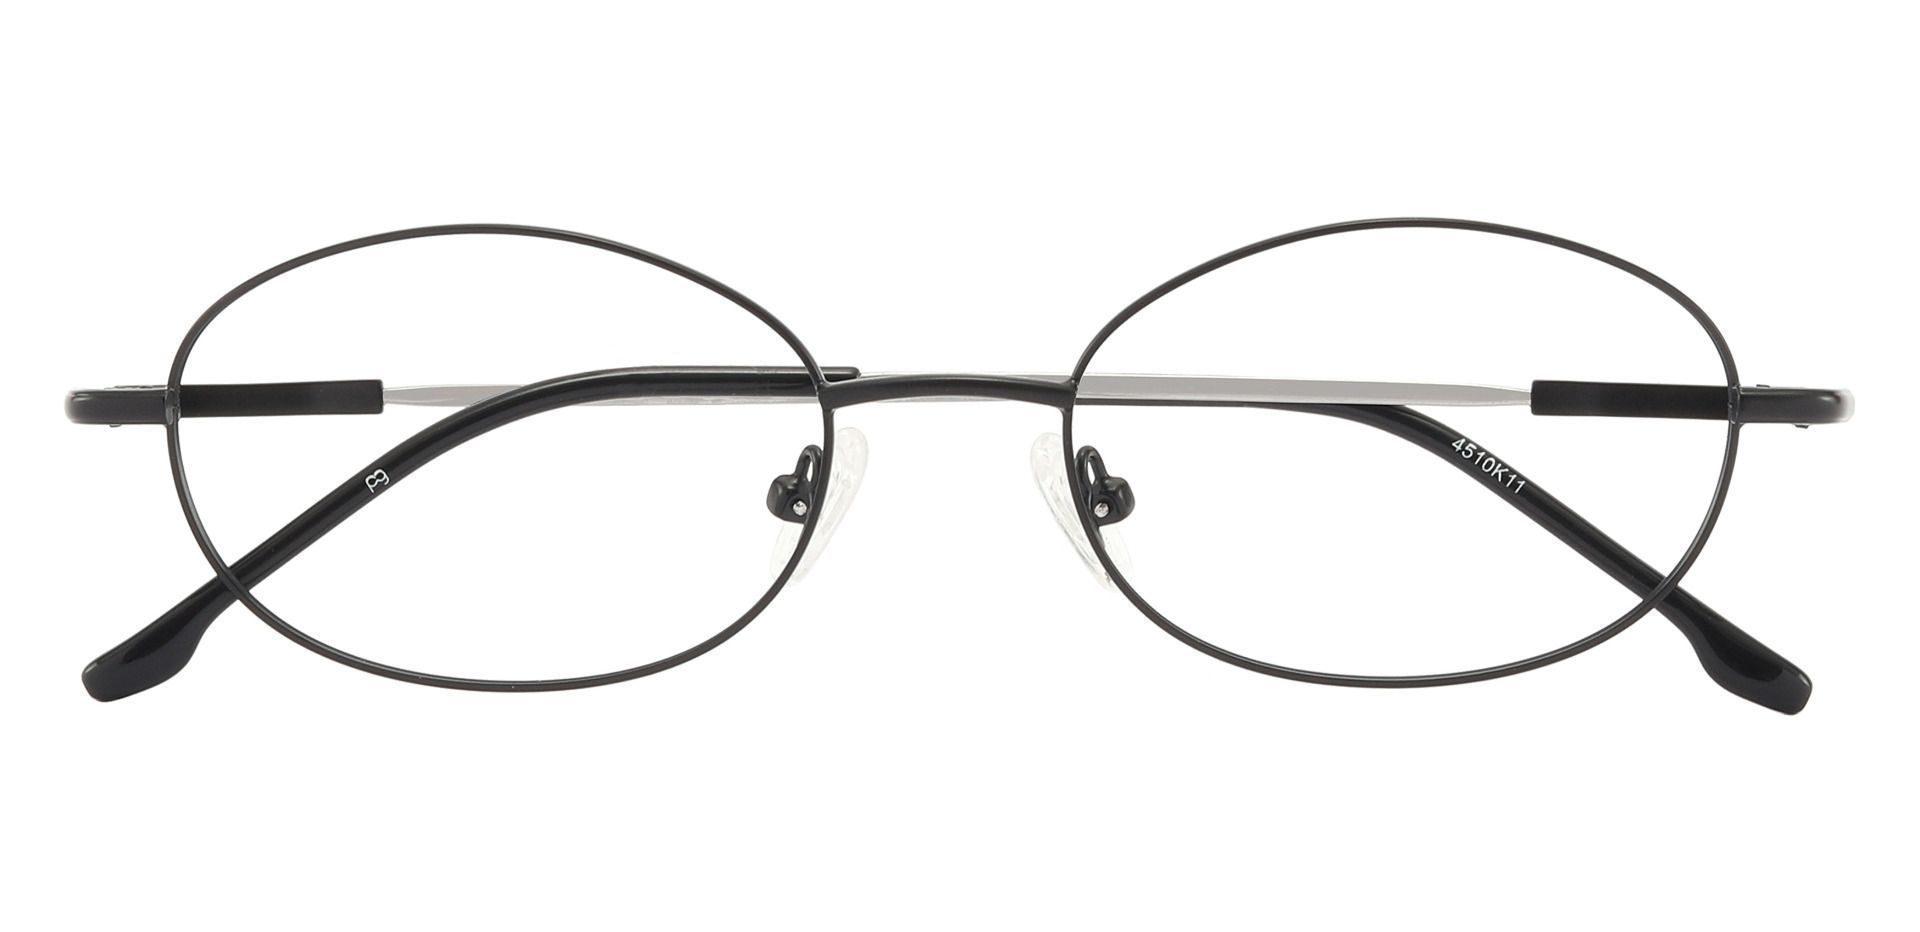 Calera Oval Prescription Glasses - Black